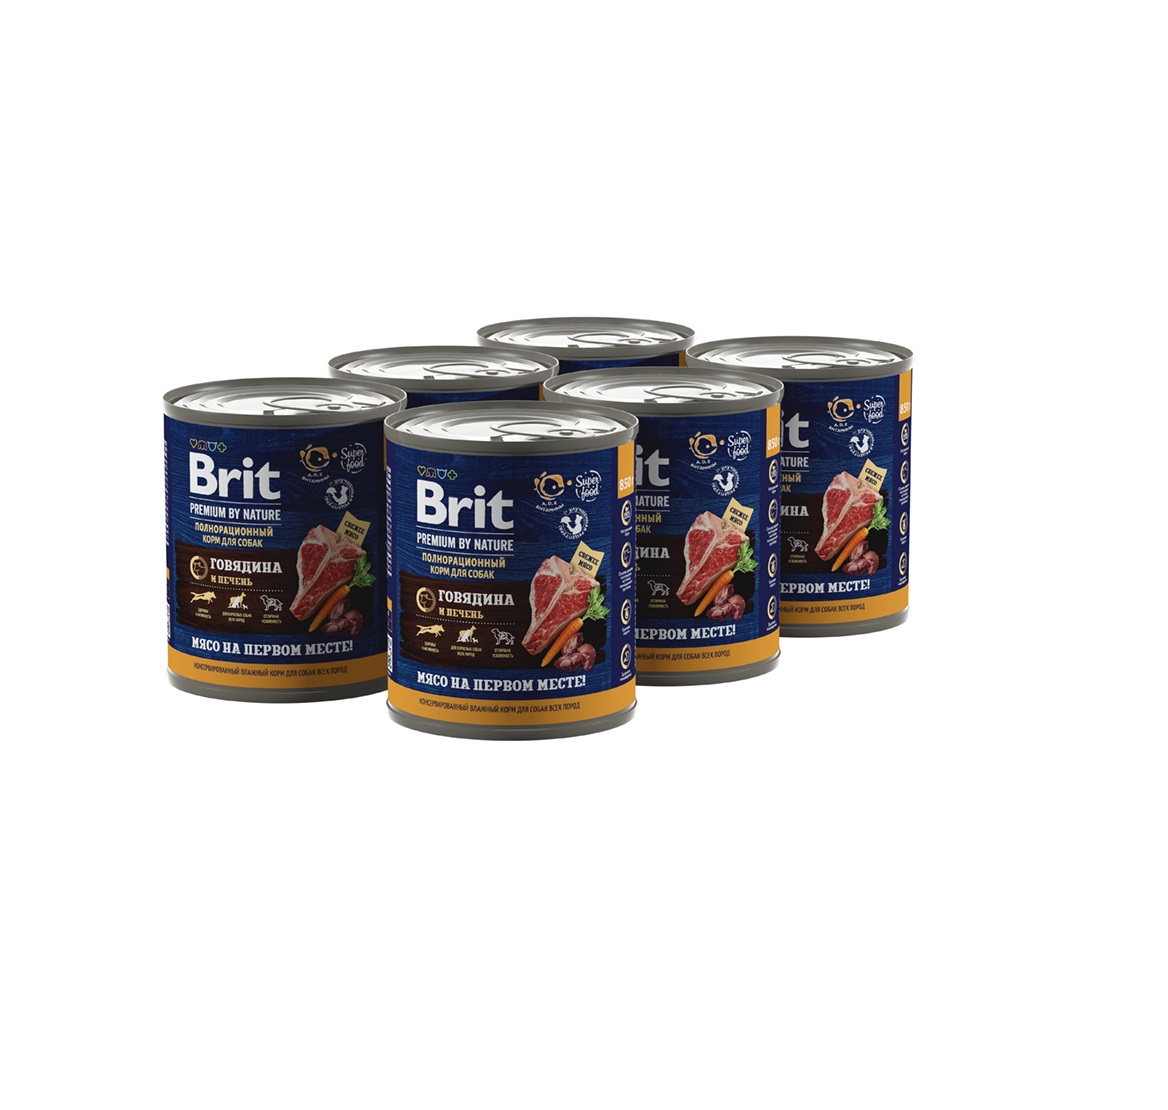 Брит 850гр - Говядина и Печень (Brit Premium by Nature) 1кор = 6шт